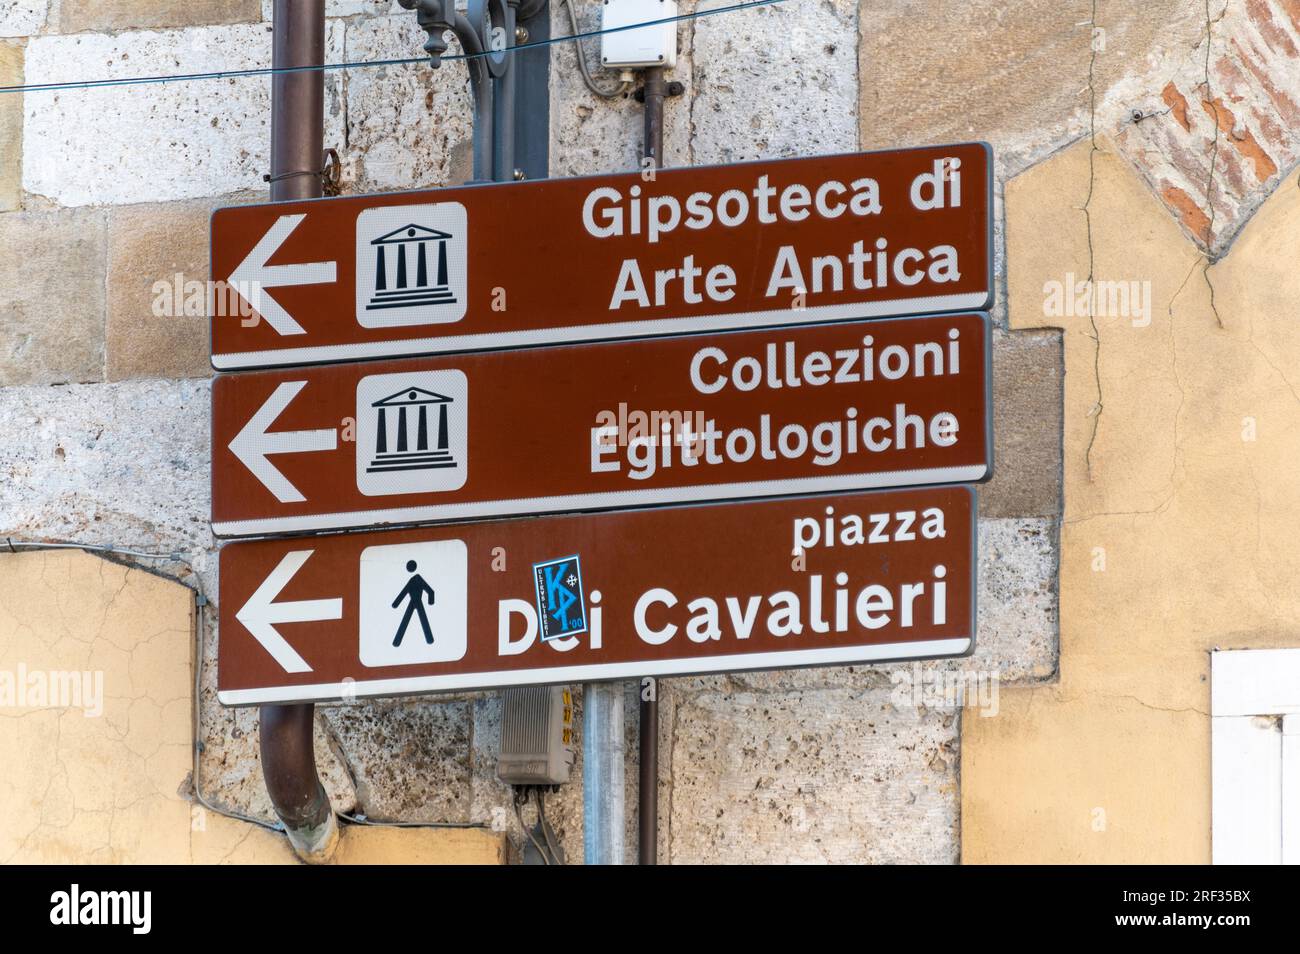 Un panneau touristique de couleur brune placé à de nombreuses attractions touristiques, dans la ville de Pise dans la région toscane de l'Italie Banque D'Images